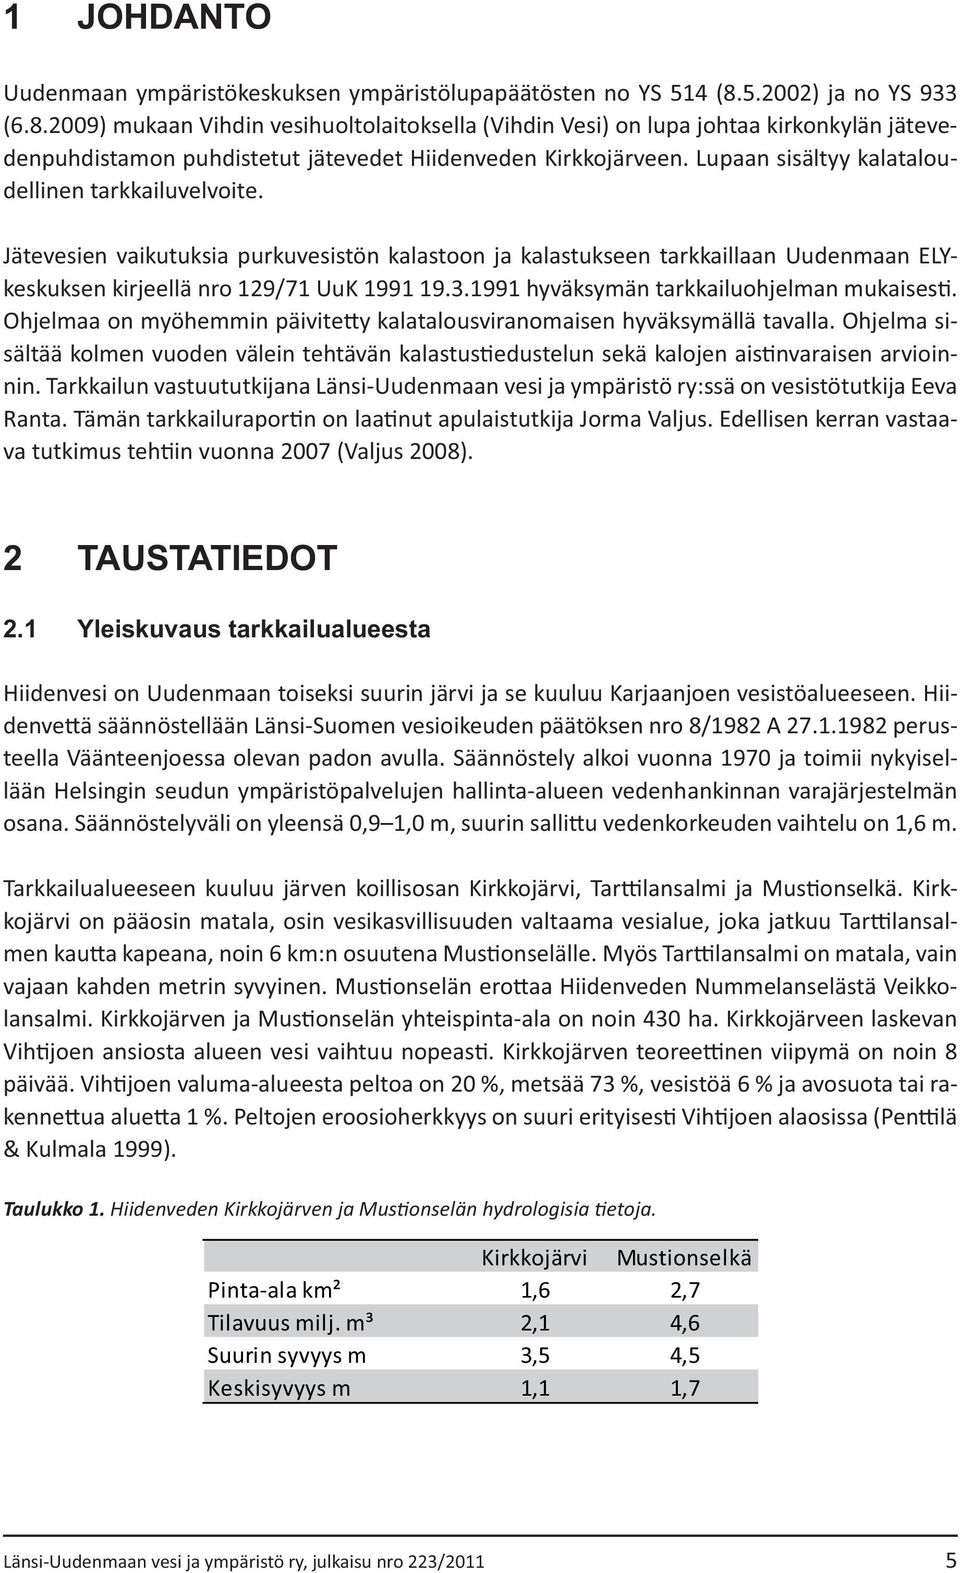 1 Yleiskuvaus tarkkailualueesta - - lään Helsingin seudun ympäristöpalvelujen hallinta-alueen vedenhankinnan